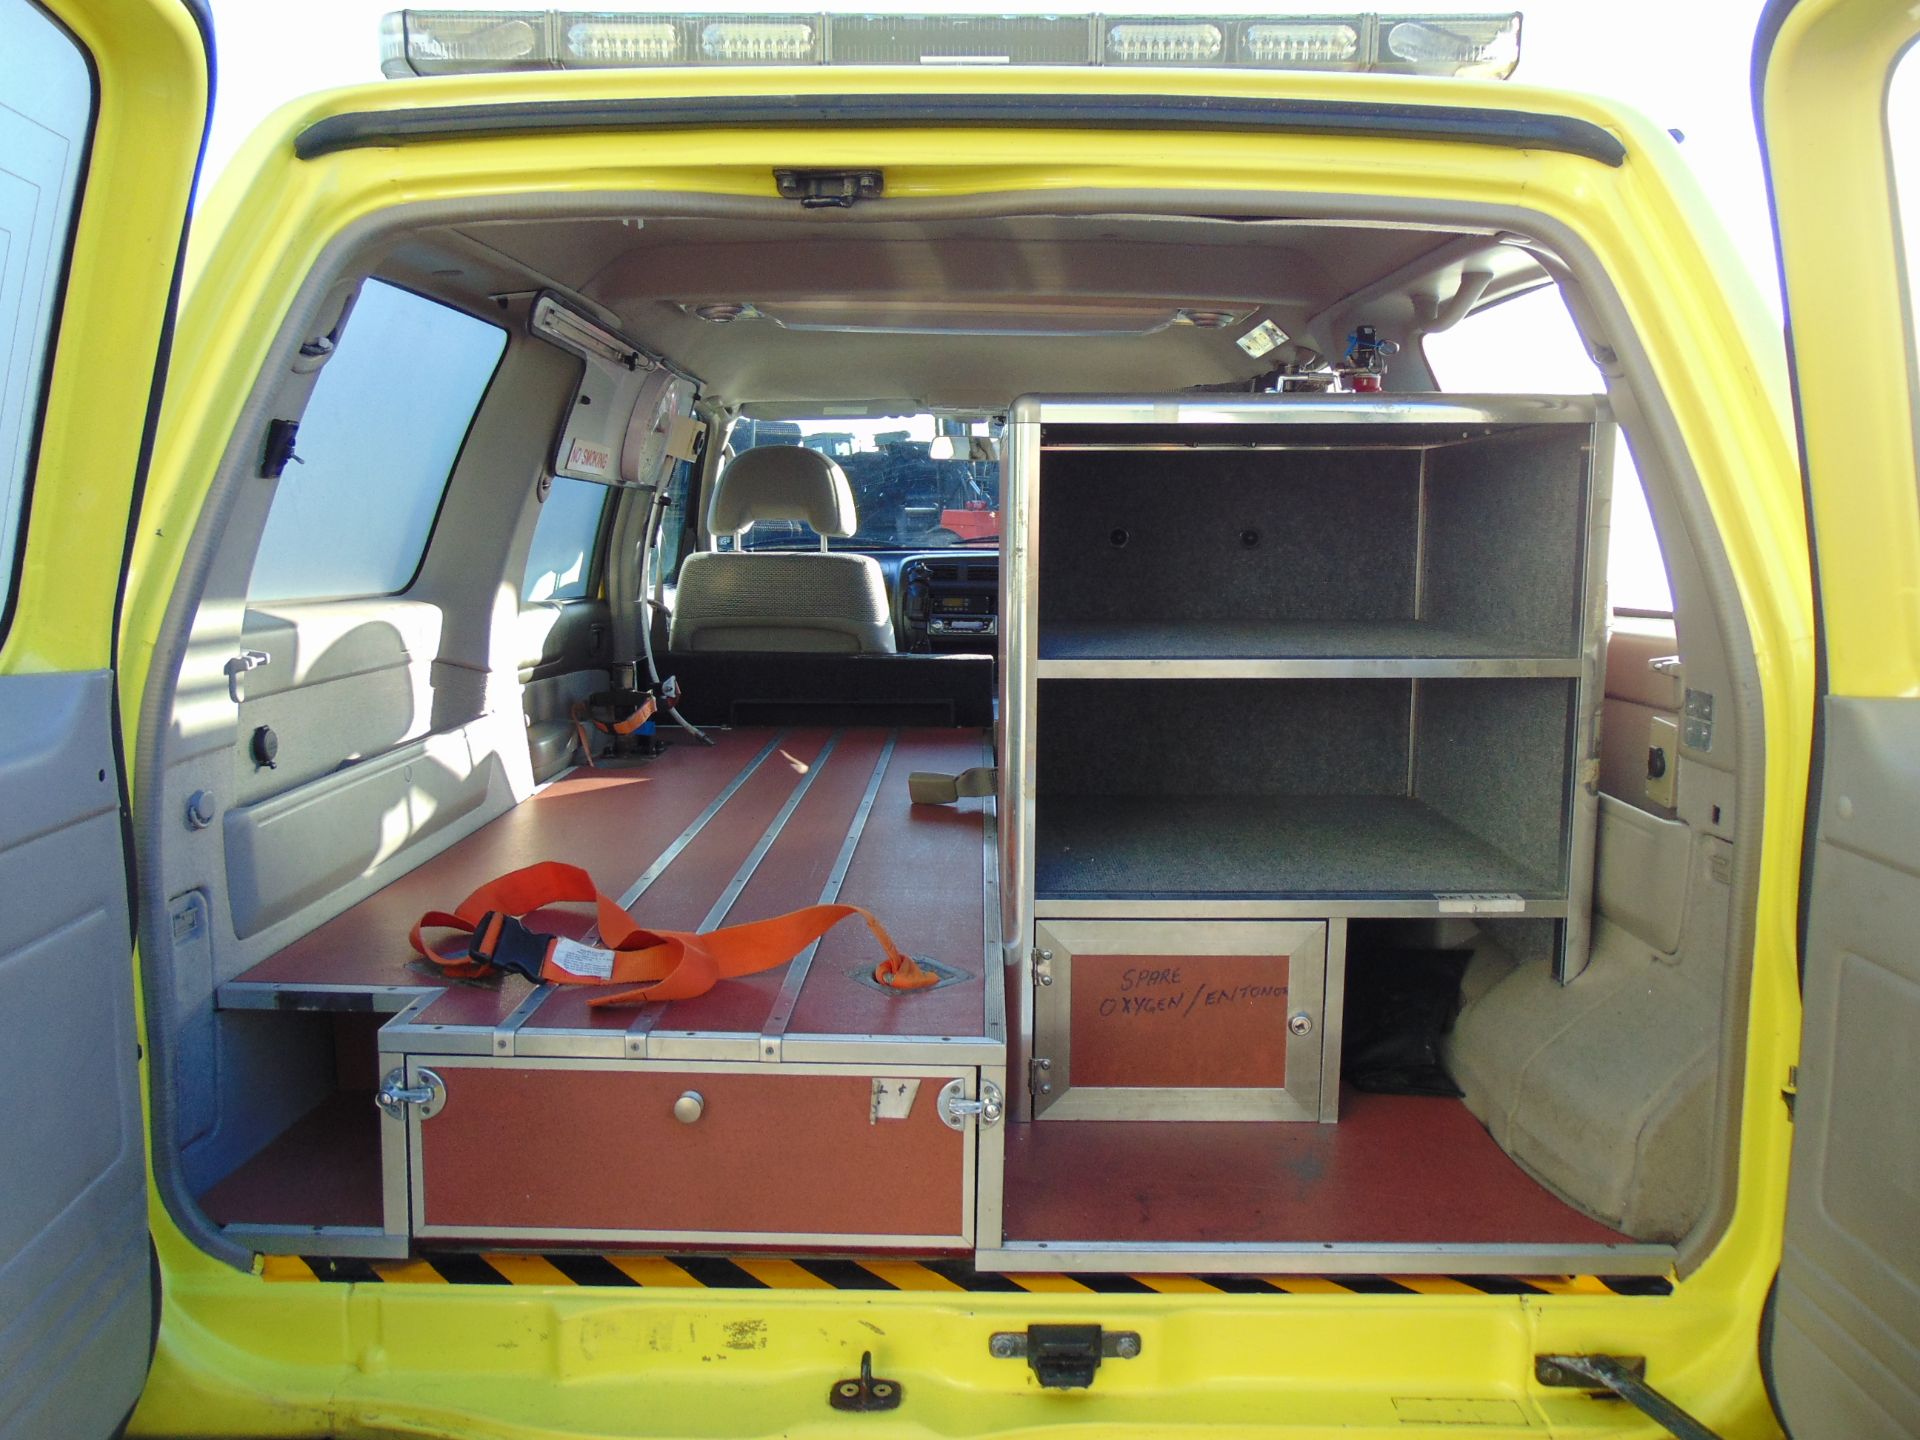 2004 Nissan Patrol GR 4x4 Ambulance / Mobile Workshop ONLY 74,974 Miles - Image 20 of 28